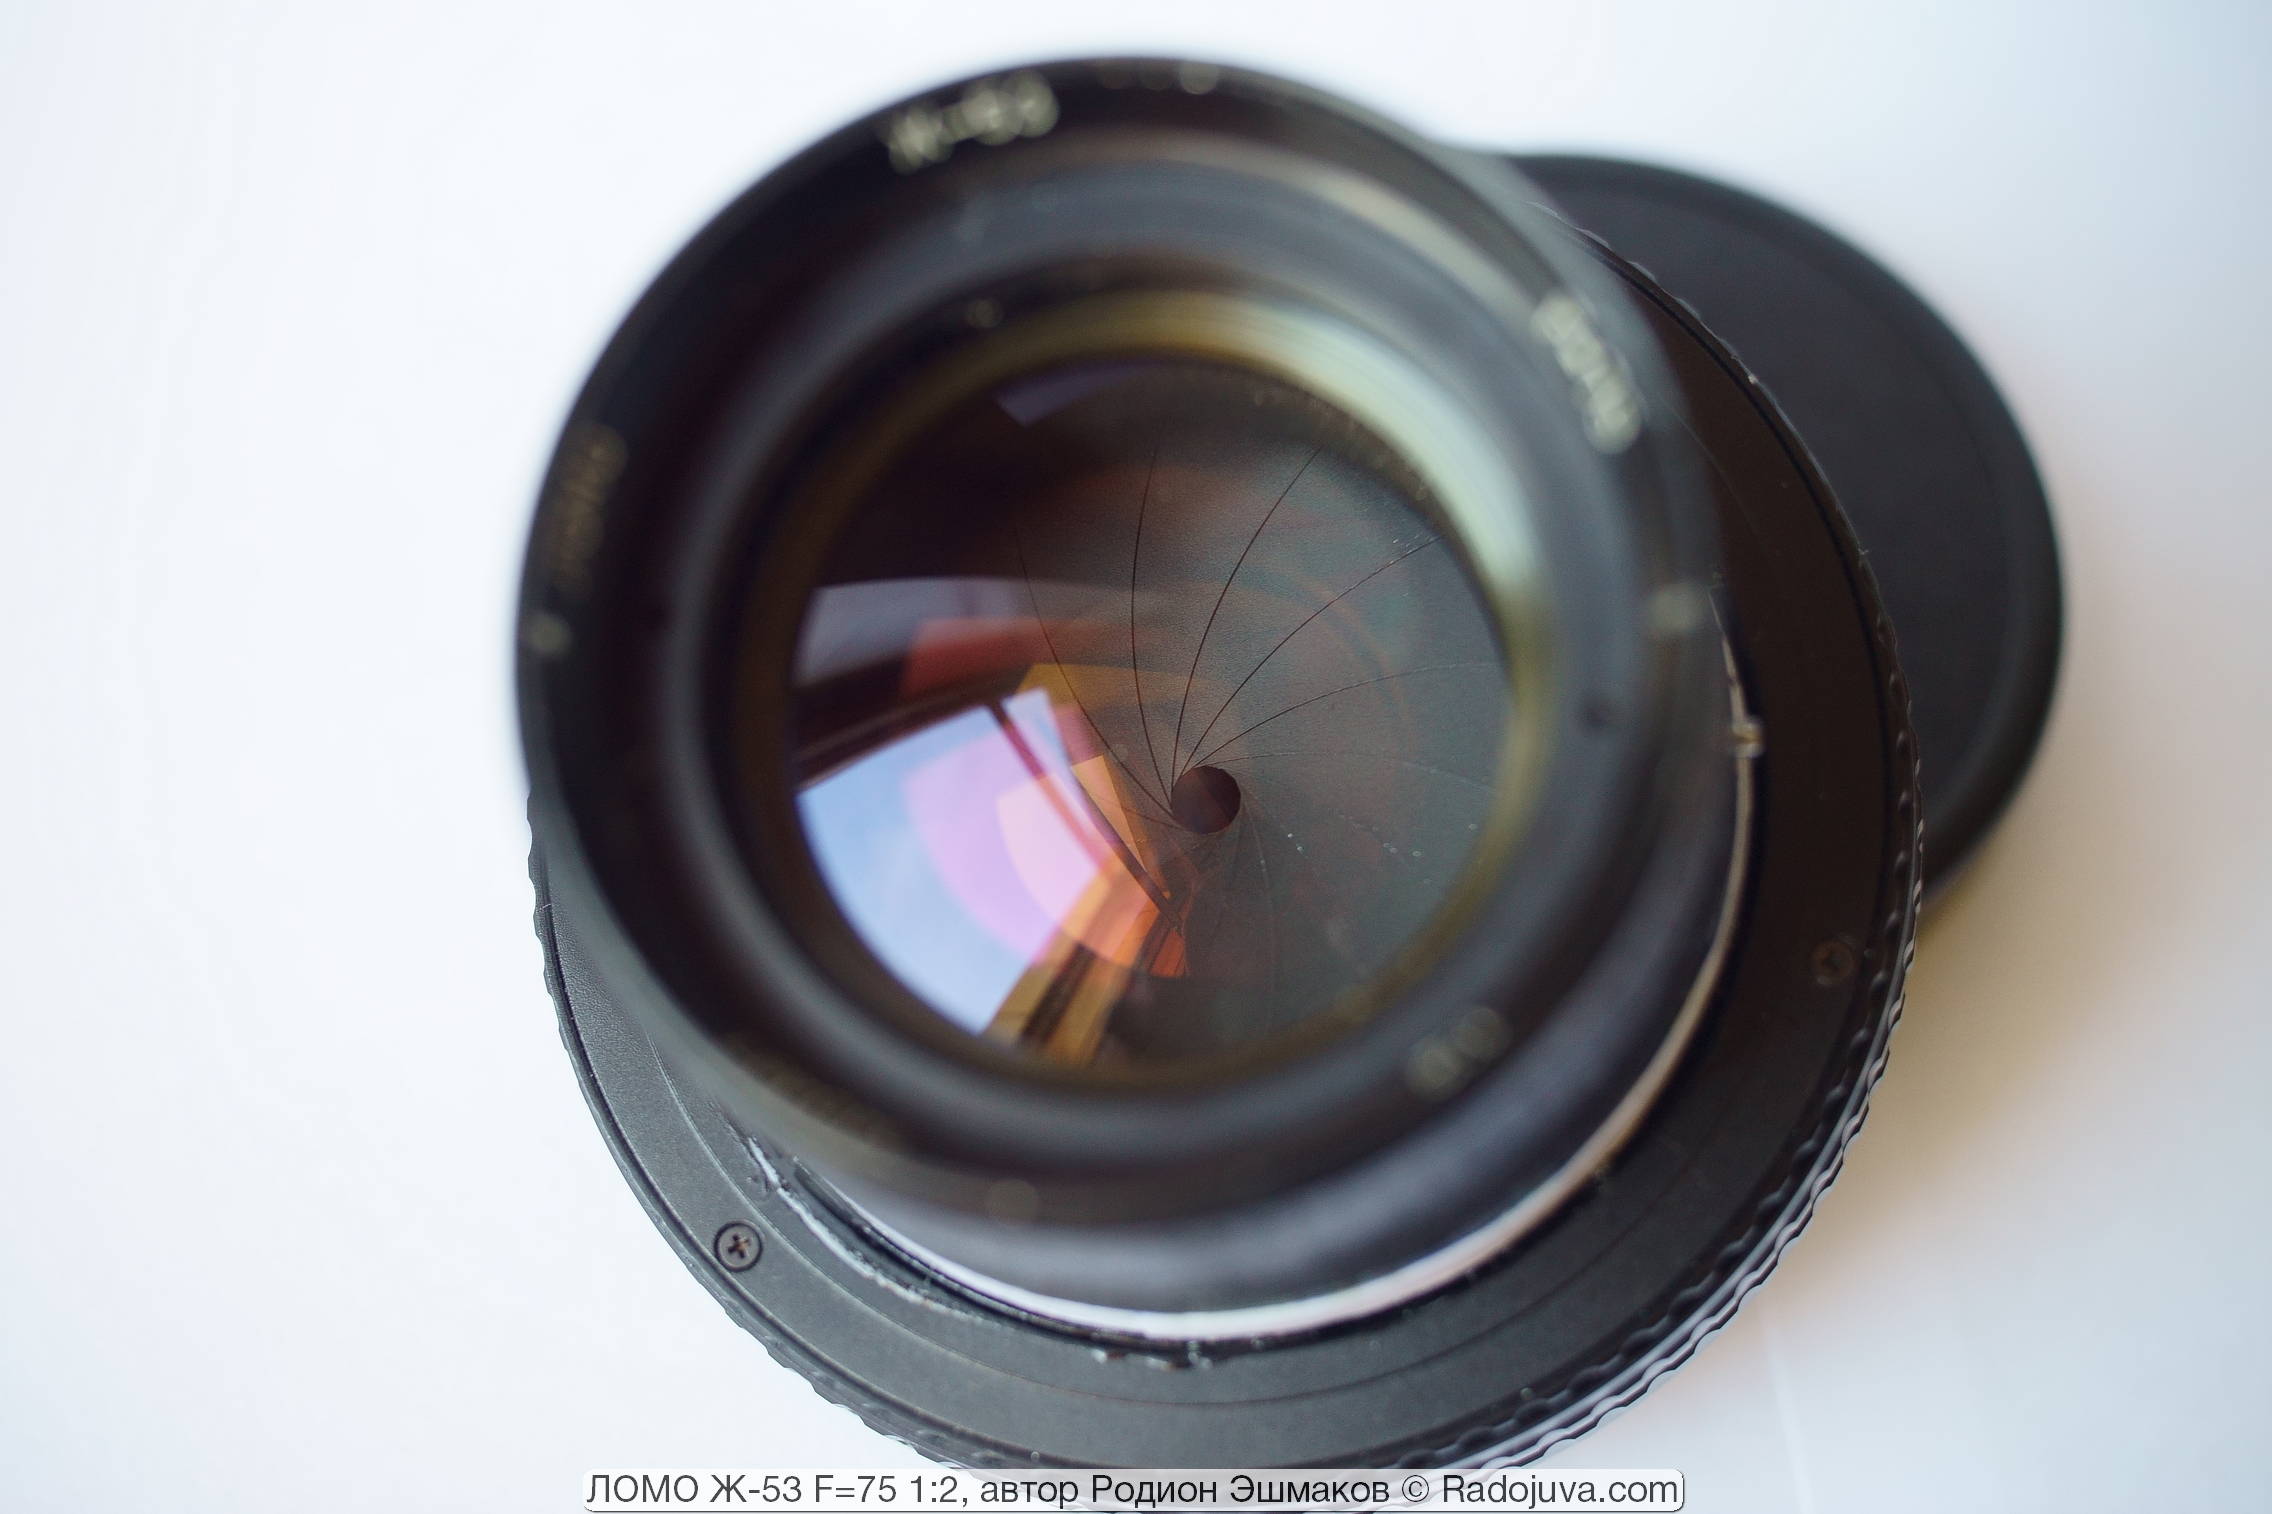 Zoom Optical Lens Unit Assembly Repair Part for Fuji Fujifilm F85 